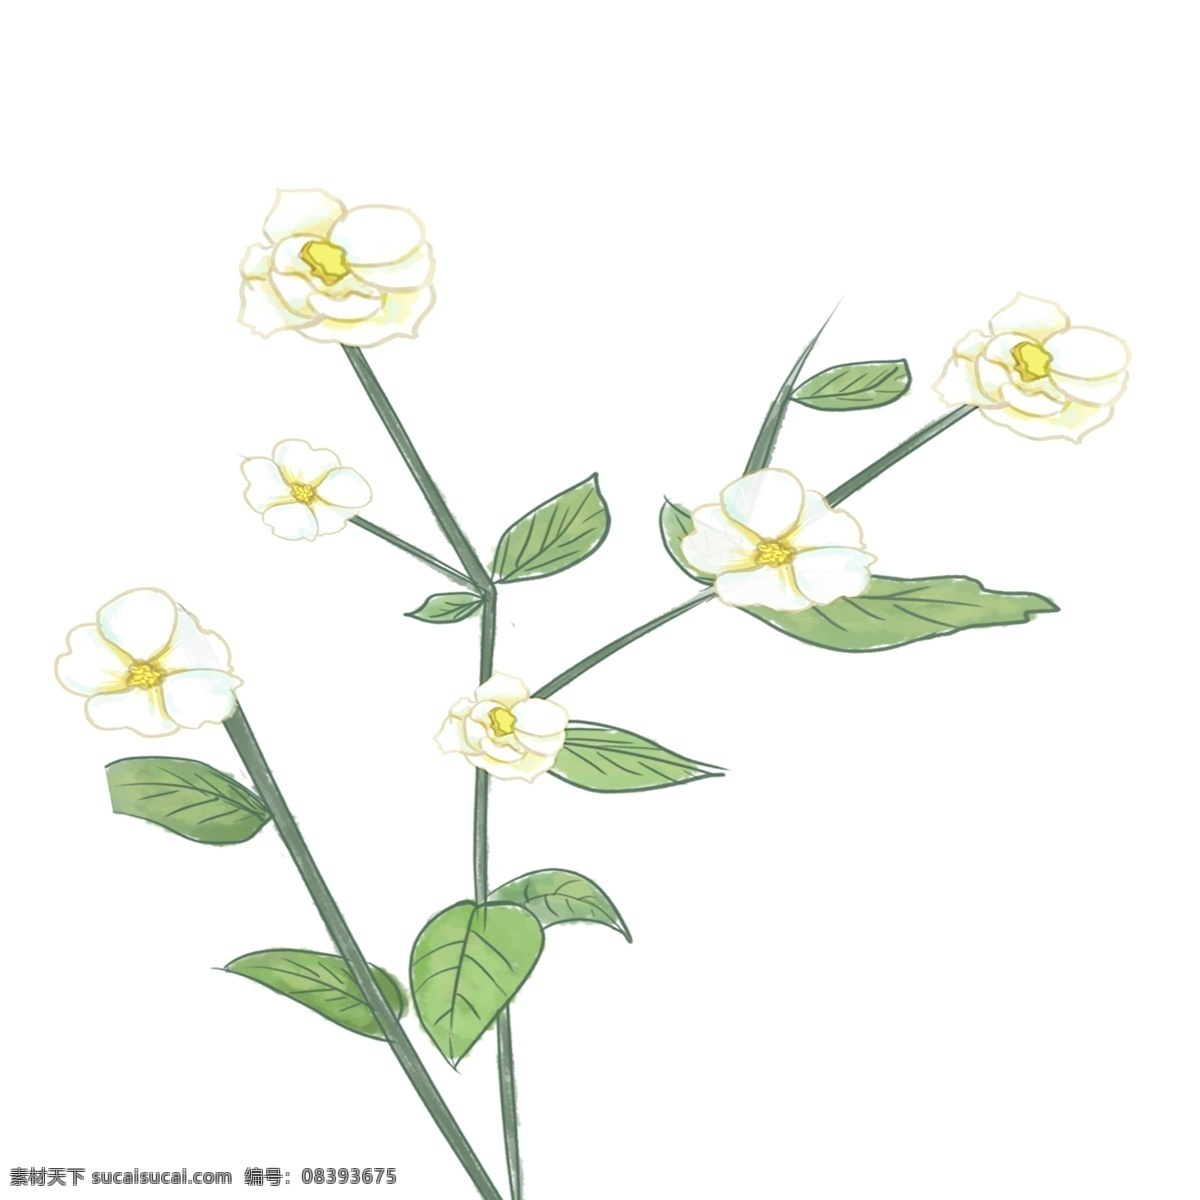 枝 清秀 淡雅 小白 花 免 抠 图 花朵 白色花朵 植物 绿叶 叶子 一枝 淡雅的小白花 免抠图 花骨朵 小白花 清秀小花